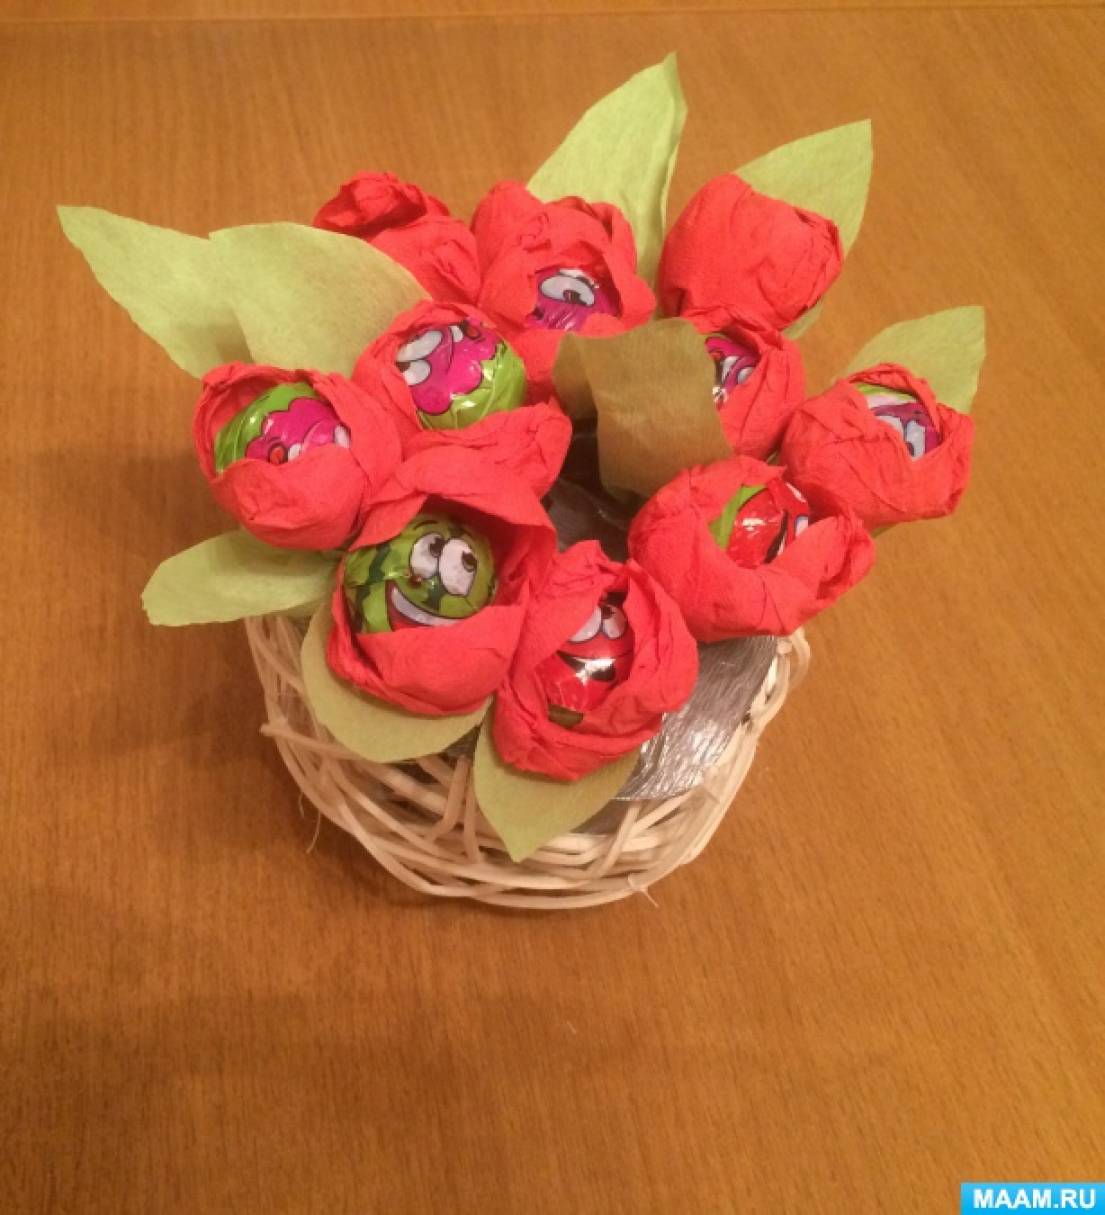 Майстер-клас по свит-дизайну «Солодкі квіти для мами»   Мета: виконати подарунок своїми руками і зробити приємне мамі